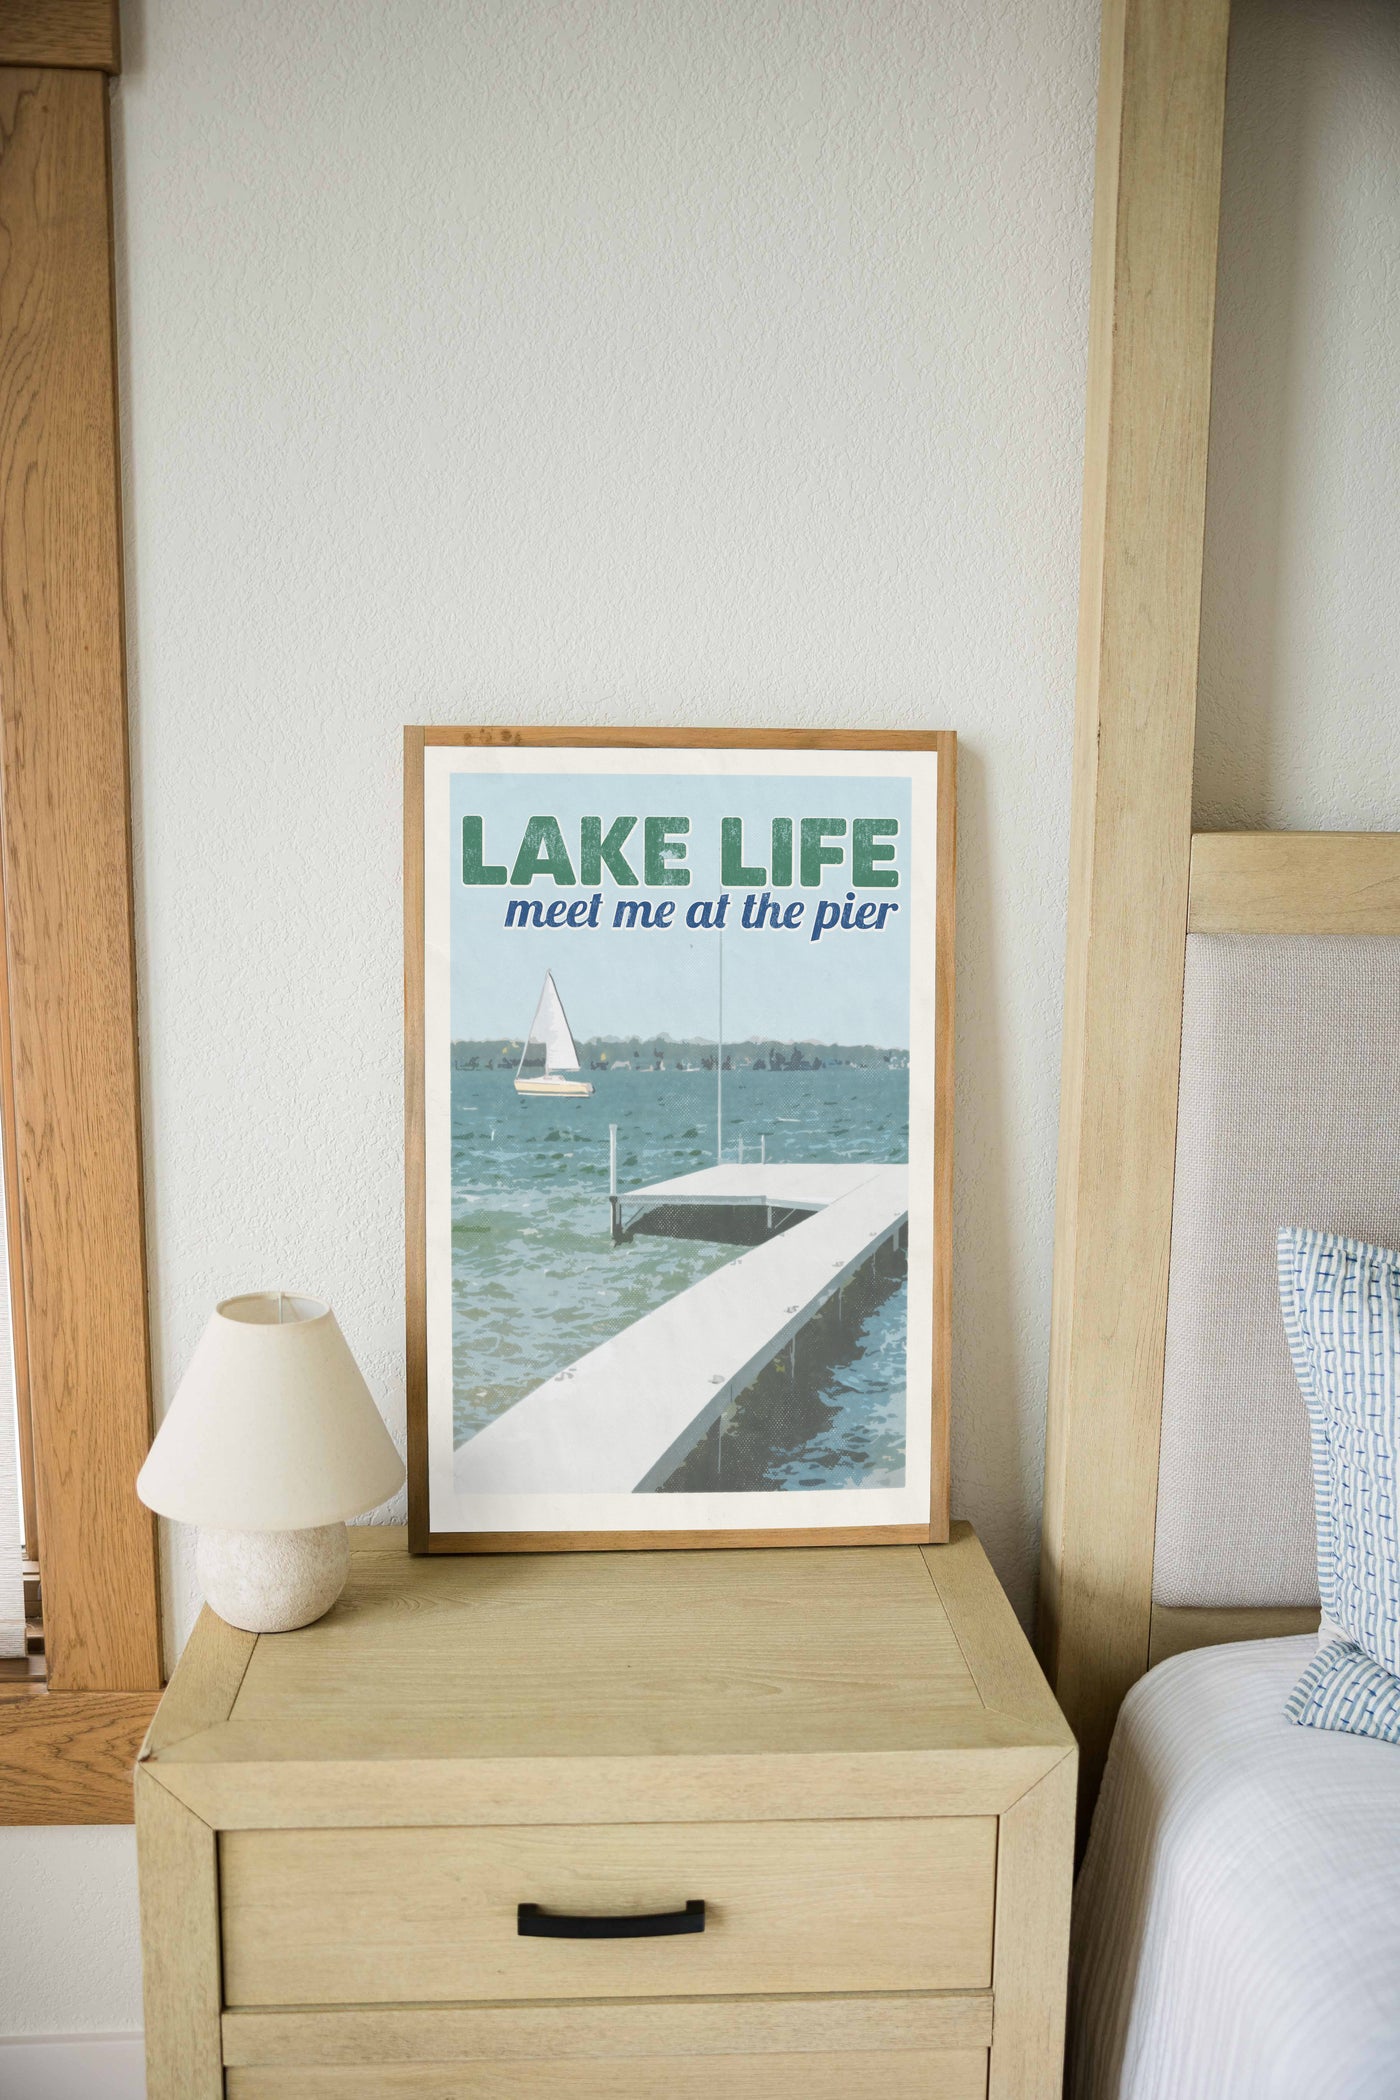 Lake Life Vintage Poster